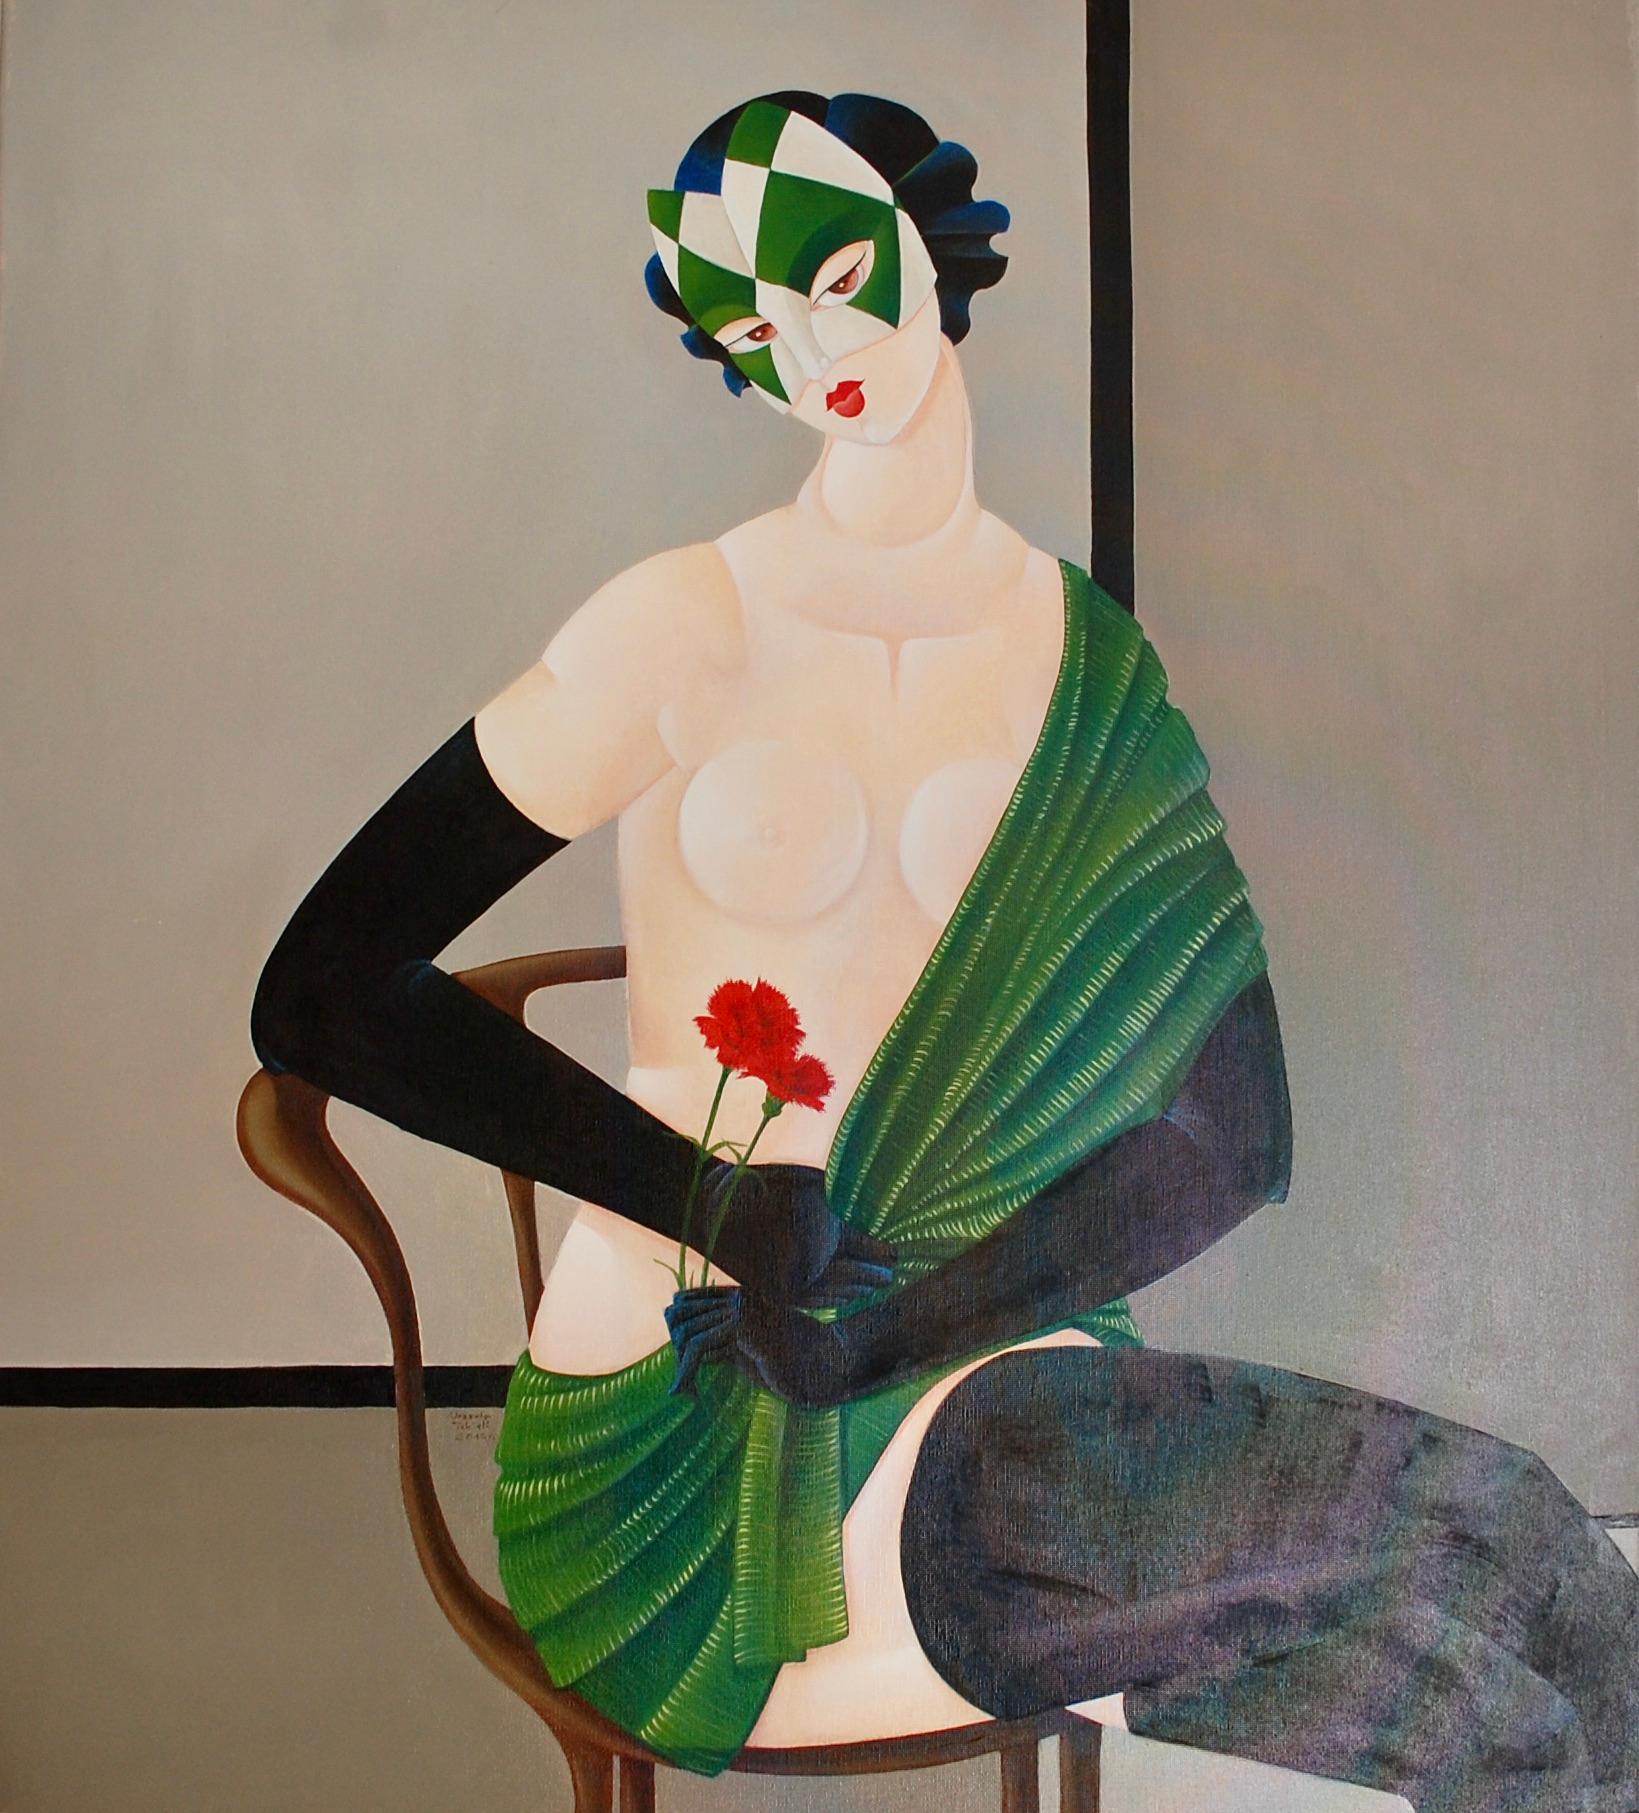 Semi Nude Zeitgenössische Malerei von einer Frau auf dem Stuhl sitzend
Dianthus caryophyllus 
Halbakt mit roter Kornblume, gerahmt.
Urszula Tekieli wurde 1979 in Krakau, Polen, geboren. Sie schloss 1999 die Hochschule für Bildende Künste in Krakau